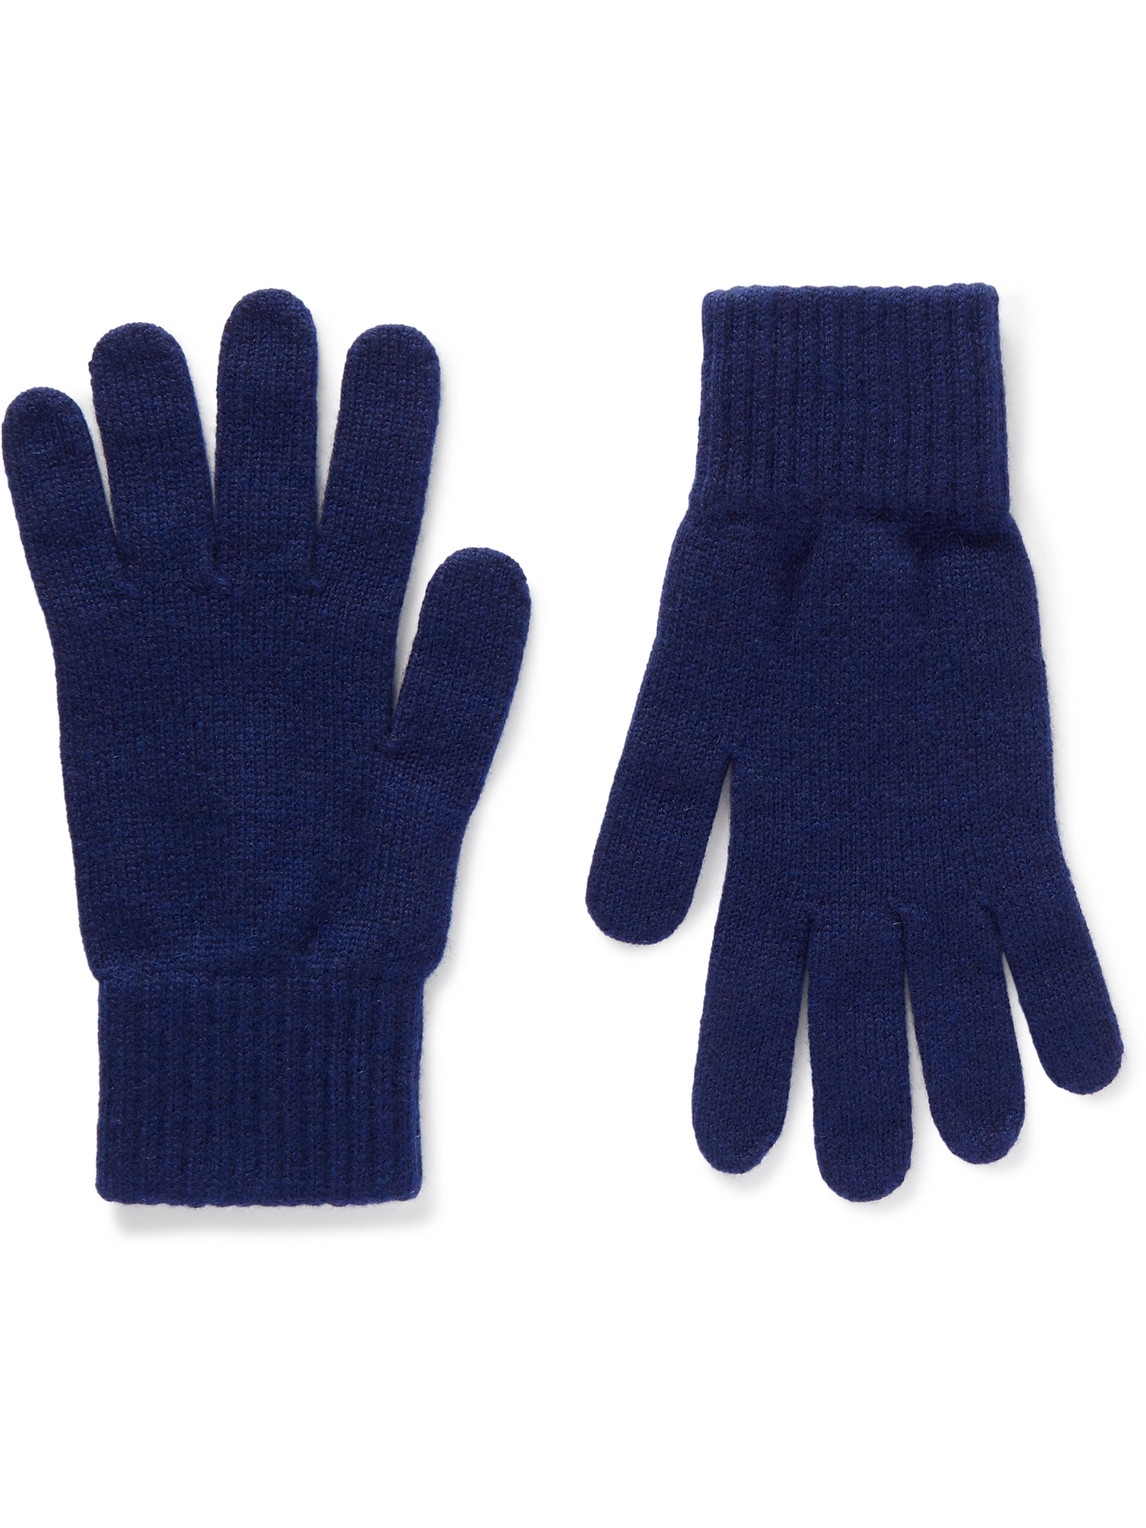 william lockie - cashmere gloves - men - blue